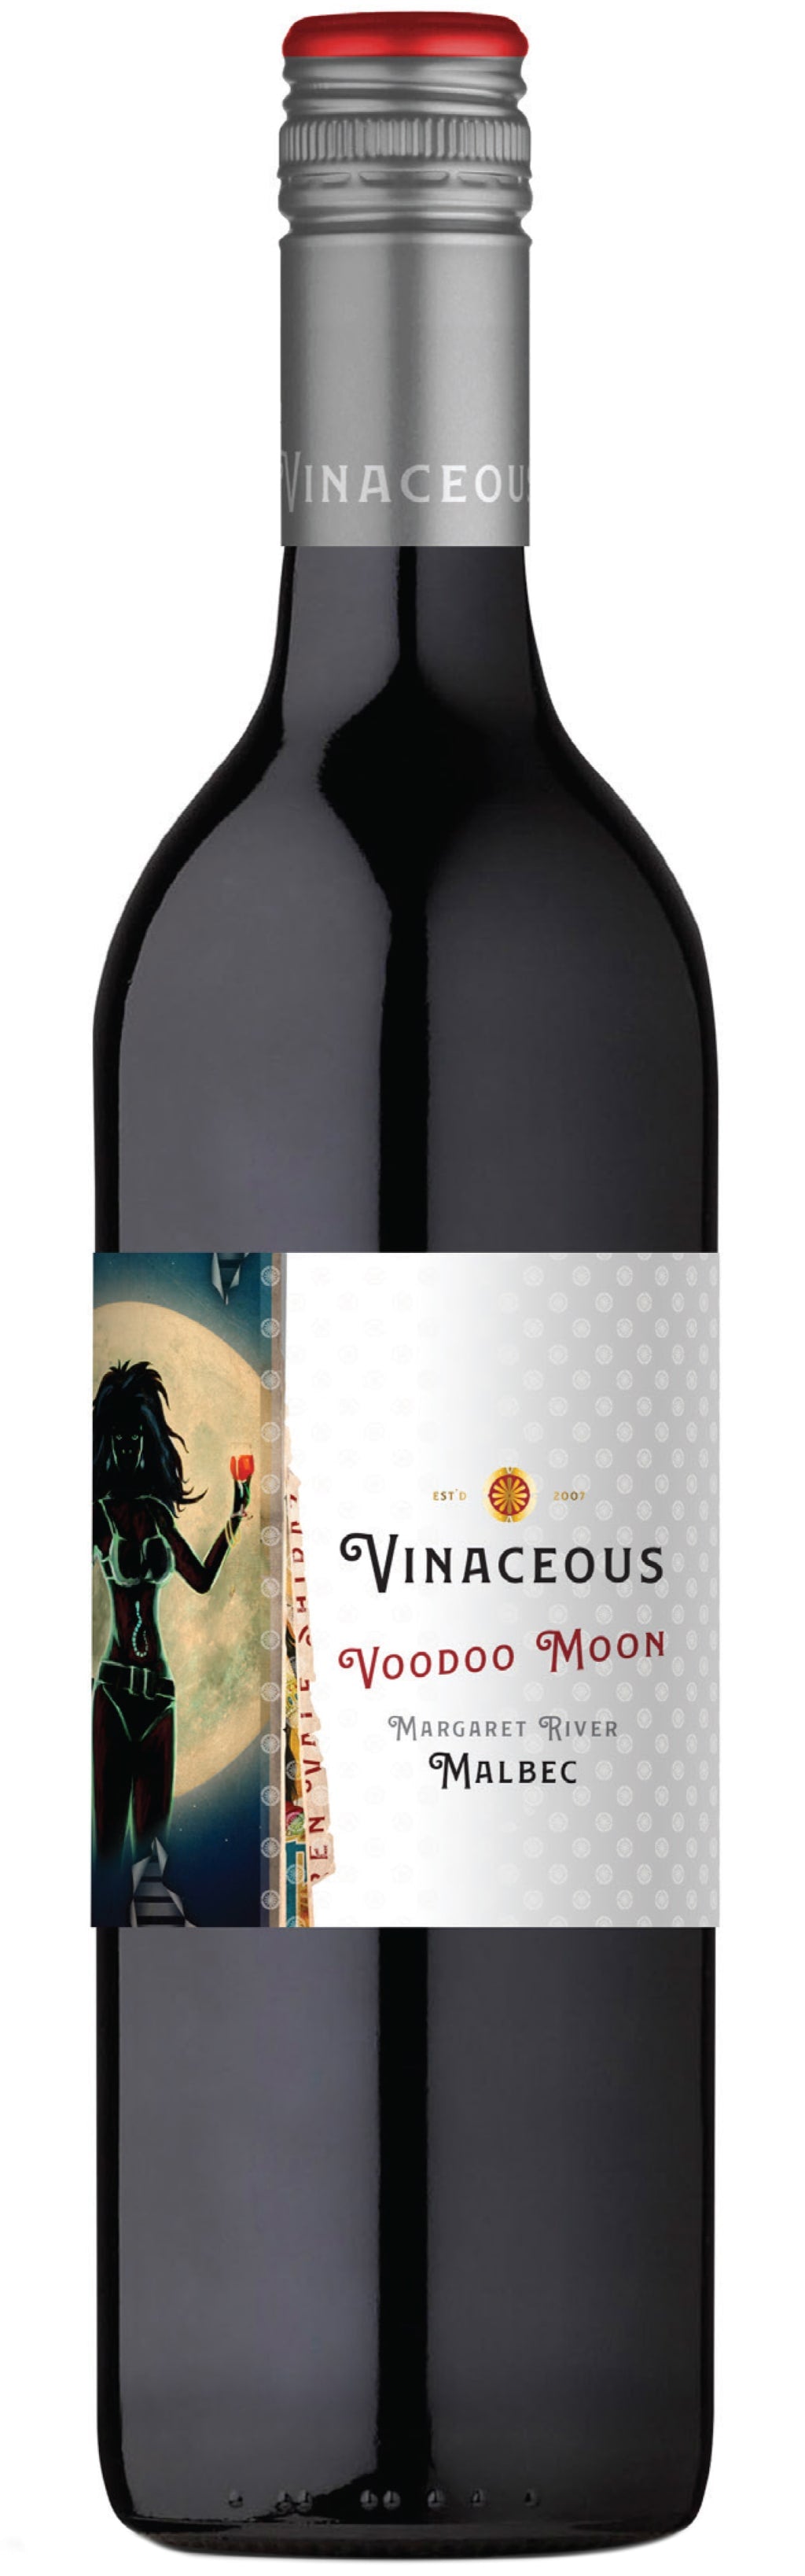 Vinaceous Malbec Voodoo Moon 2018